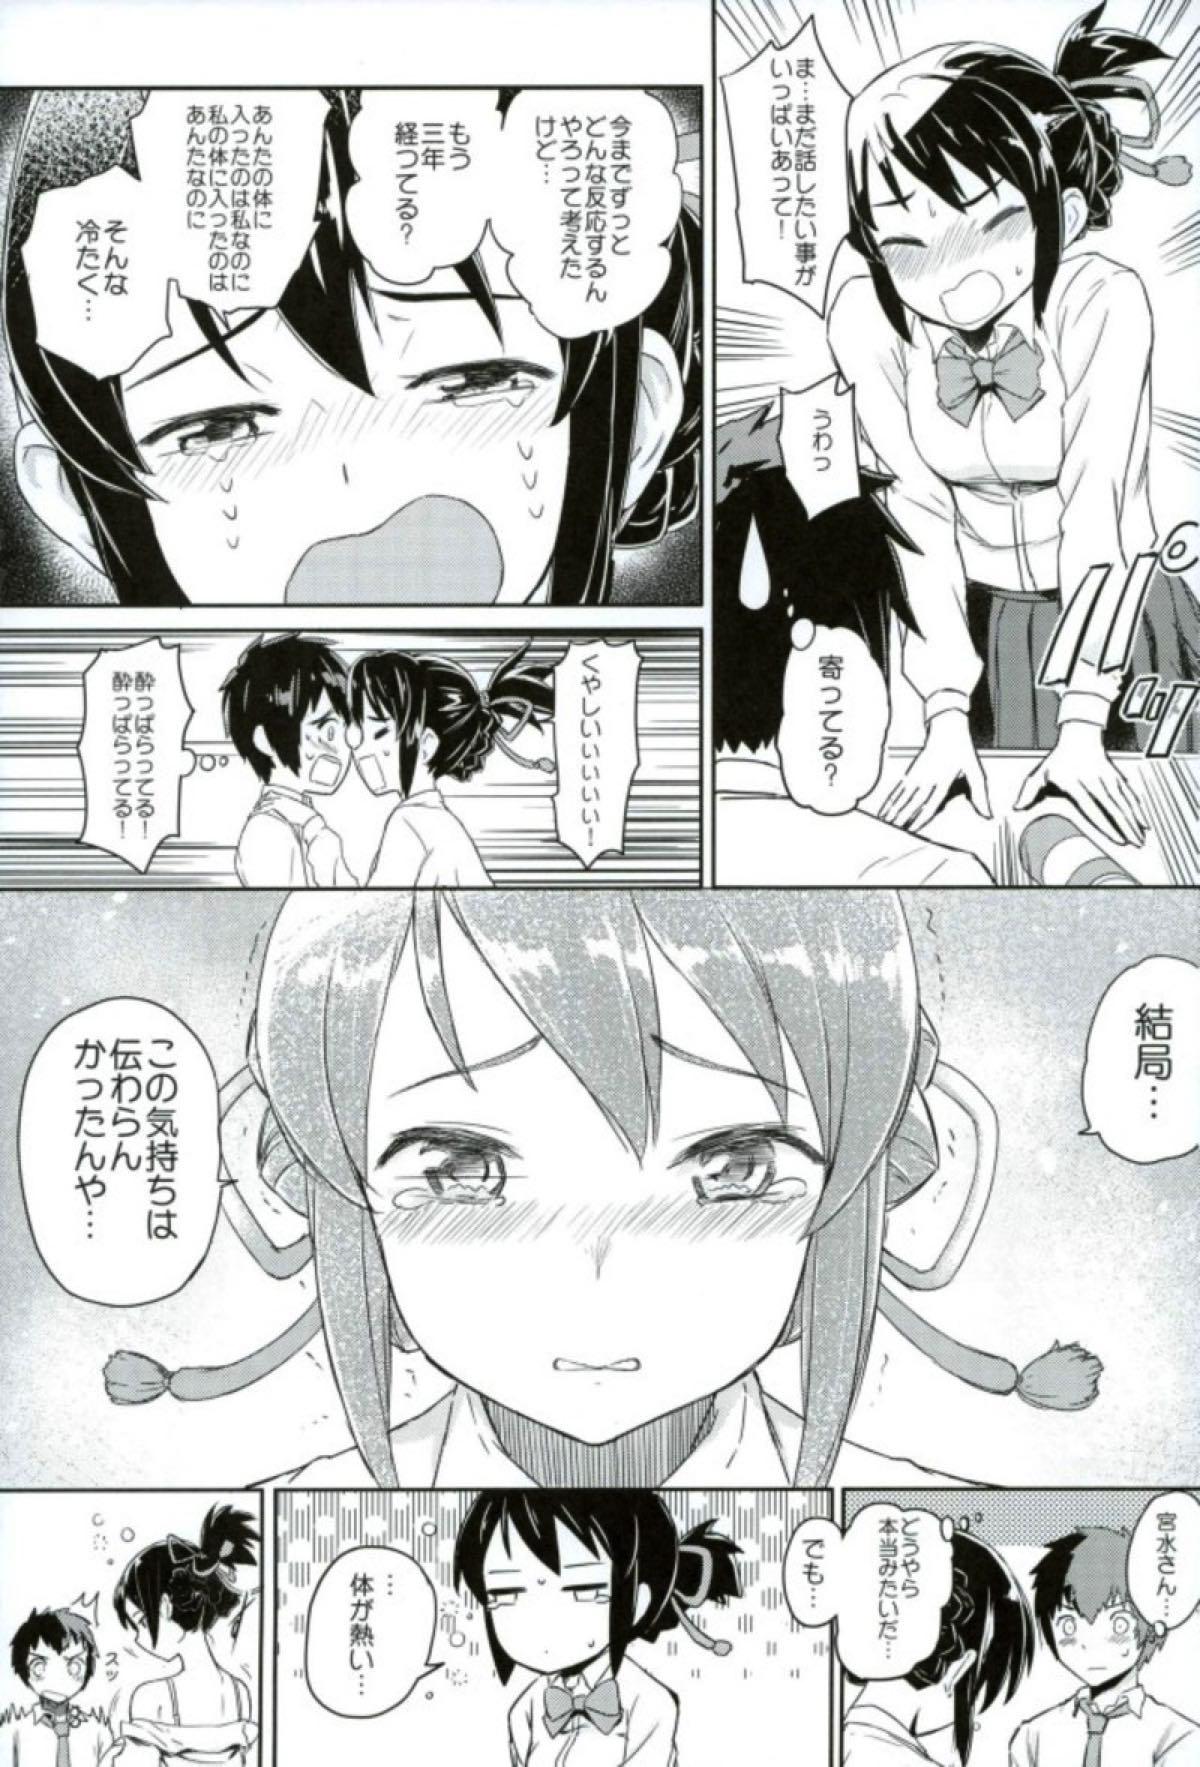 Vagina Kimi to Boku no Musubi - Kimi no na wa. Hot Couple Sex - Page 4